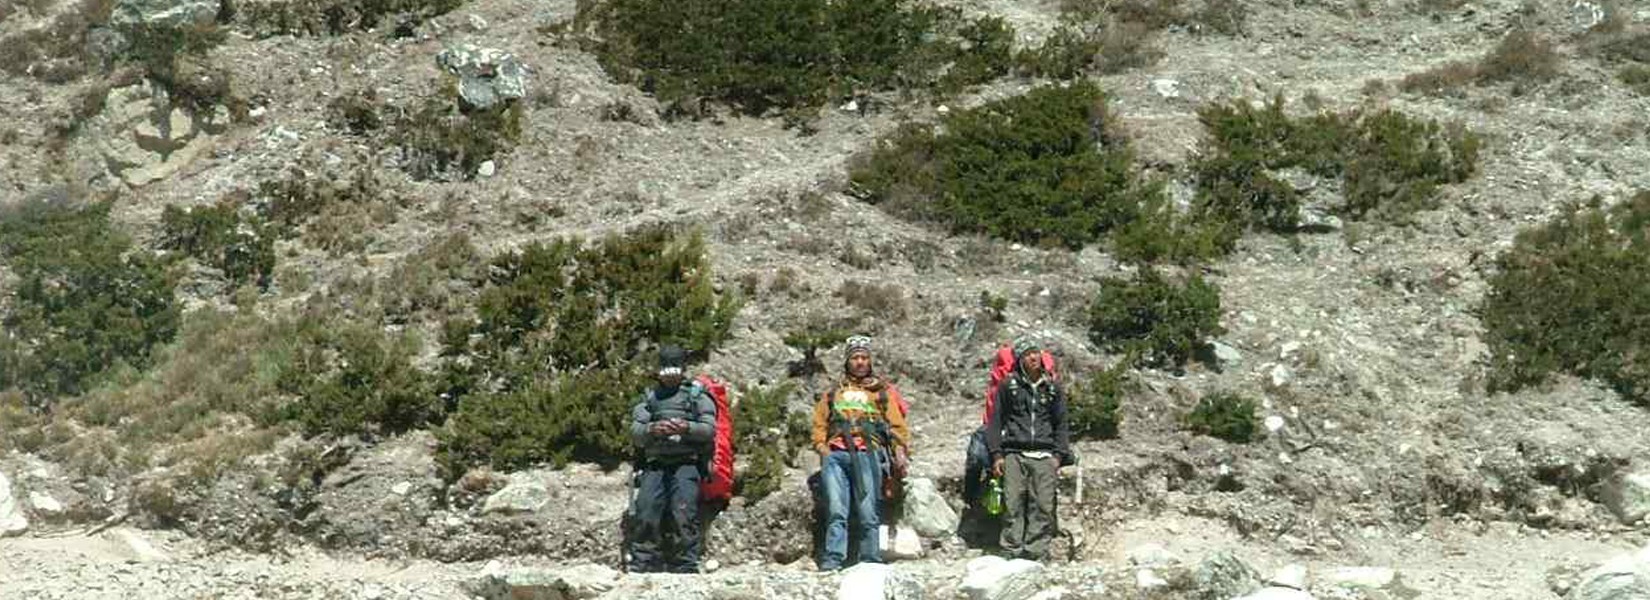 How Long Is Everest Base Camp Trek